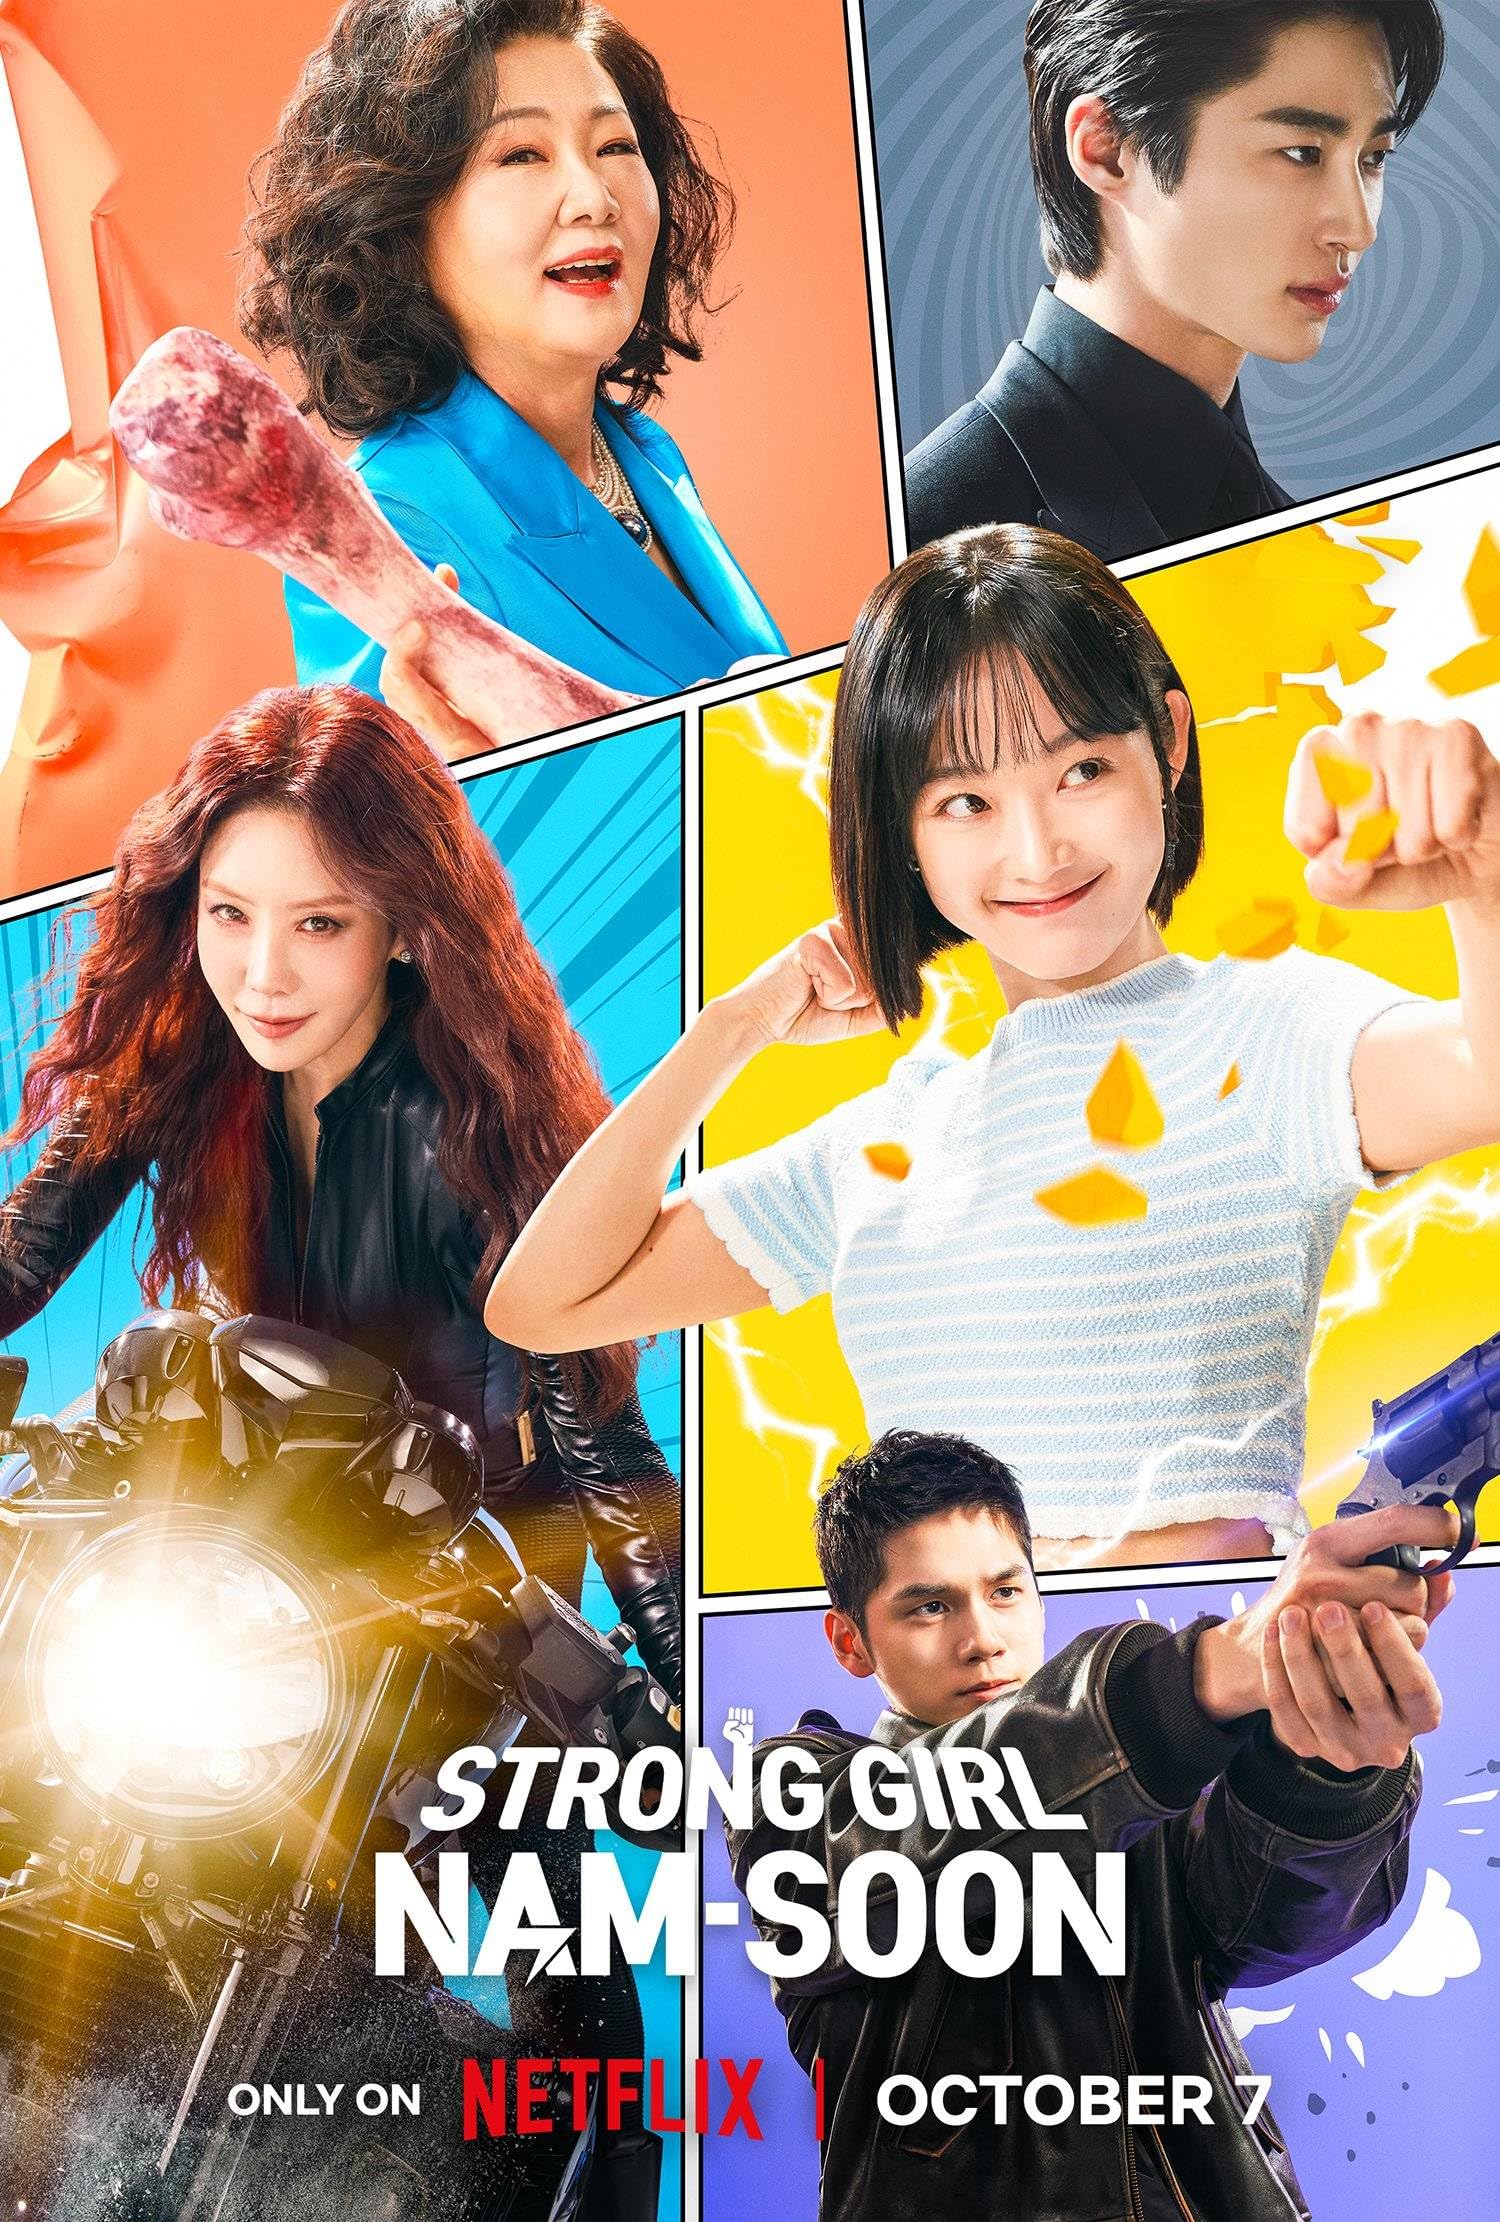 مسلسل الفتاة القوية نام سون Strong Girl Nam-soon الحلقة 9 مترجمة